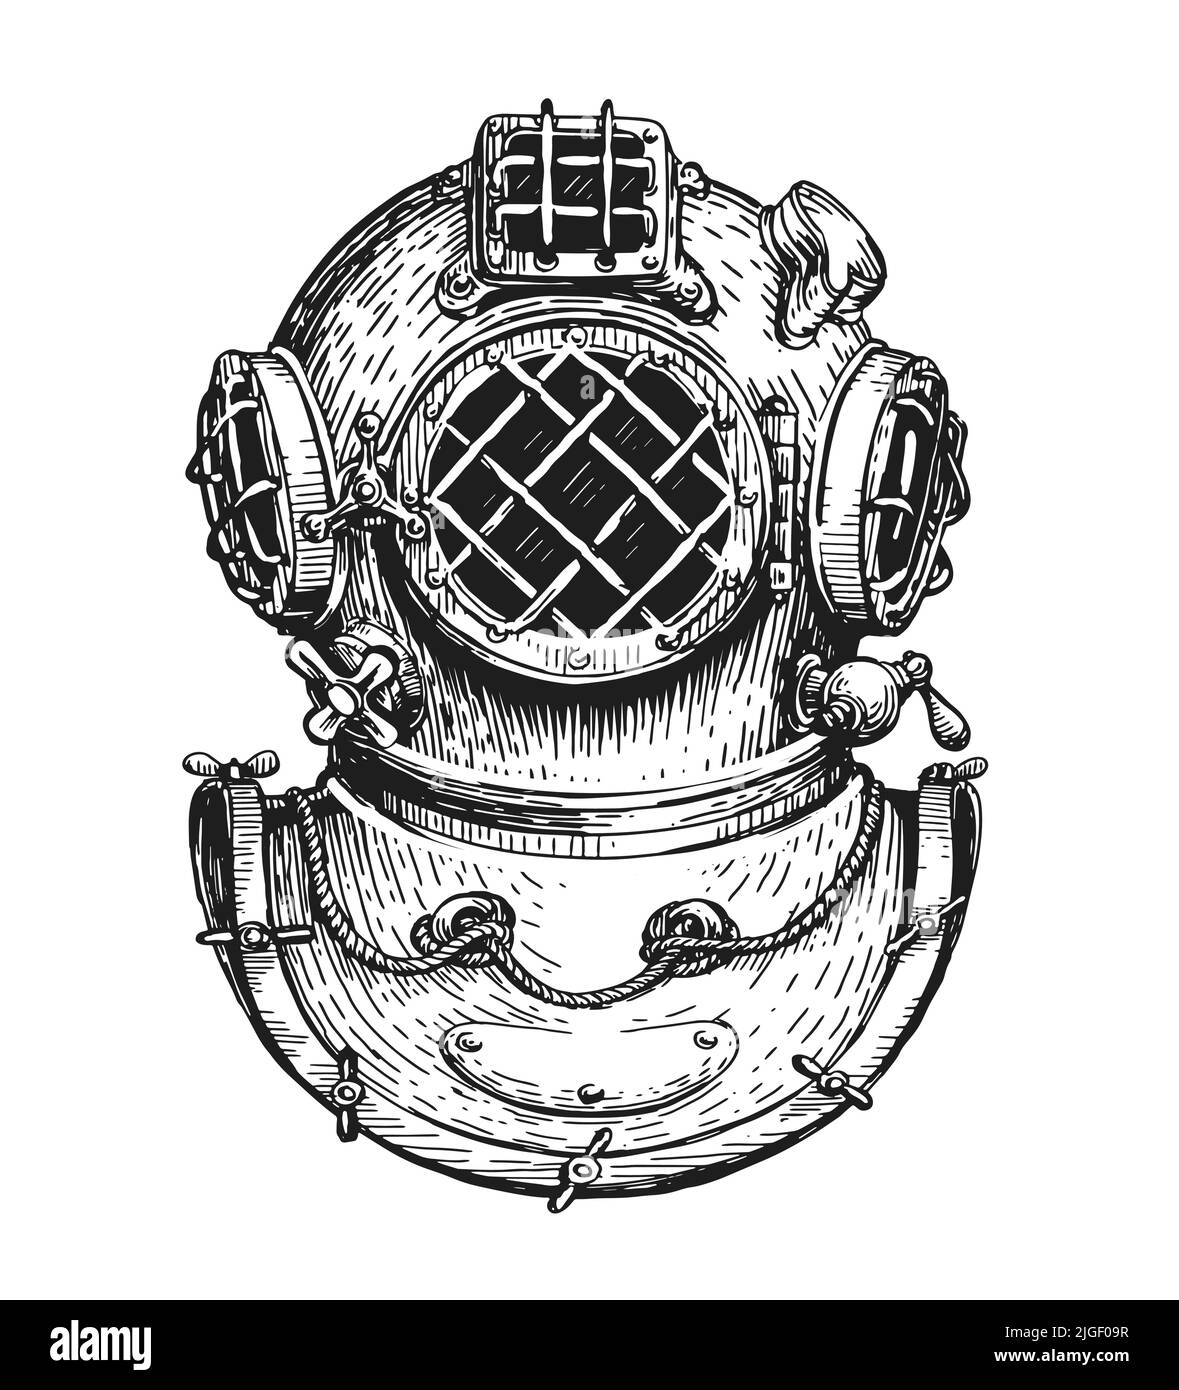 Disegno del casco vintage subacqueo. Concetto di immersione in mare. Illustrazione vettoriale nautica disegnata in vecchio stile di incisione Illustrazione Vettoriale